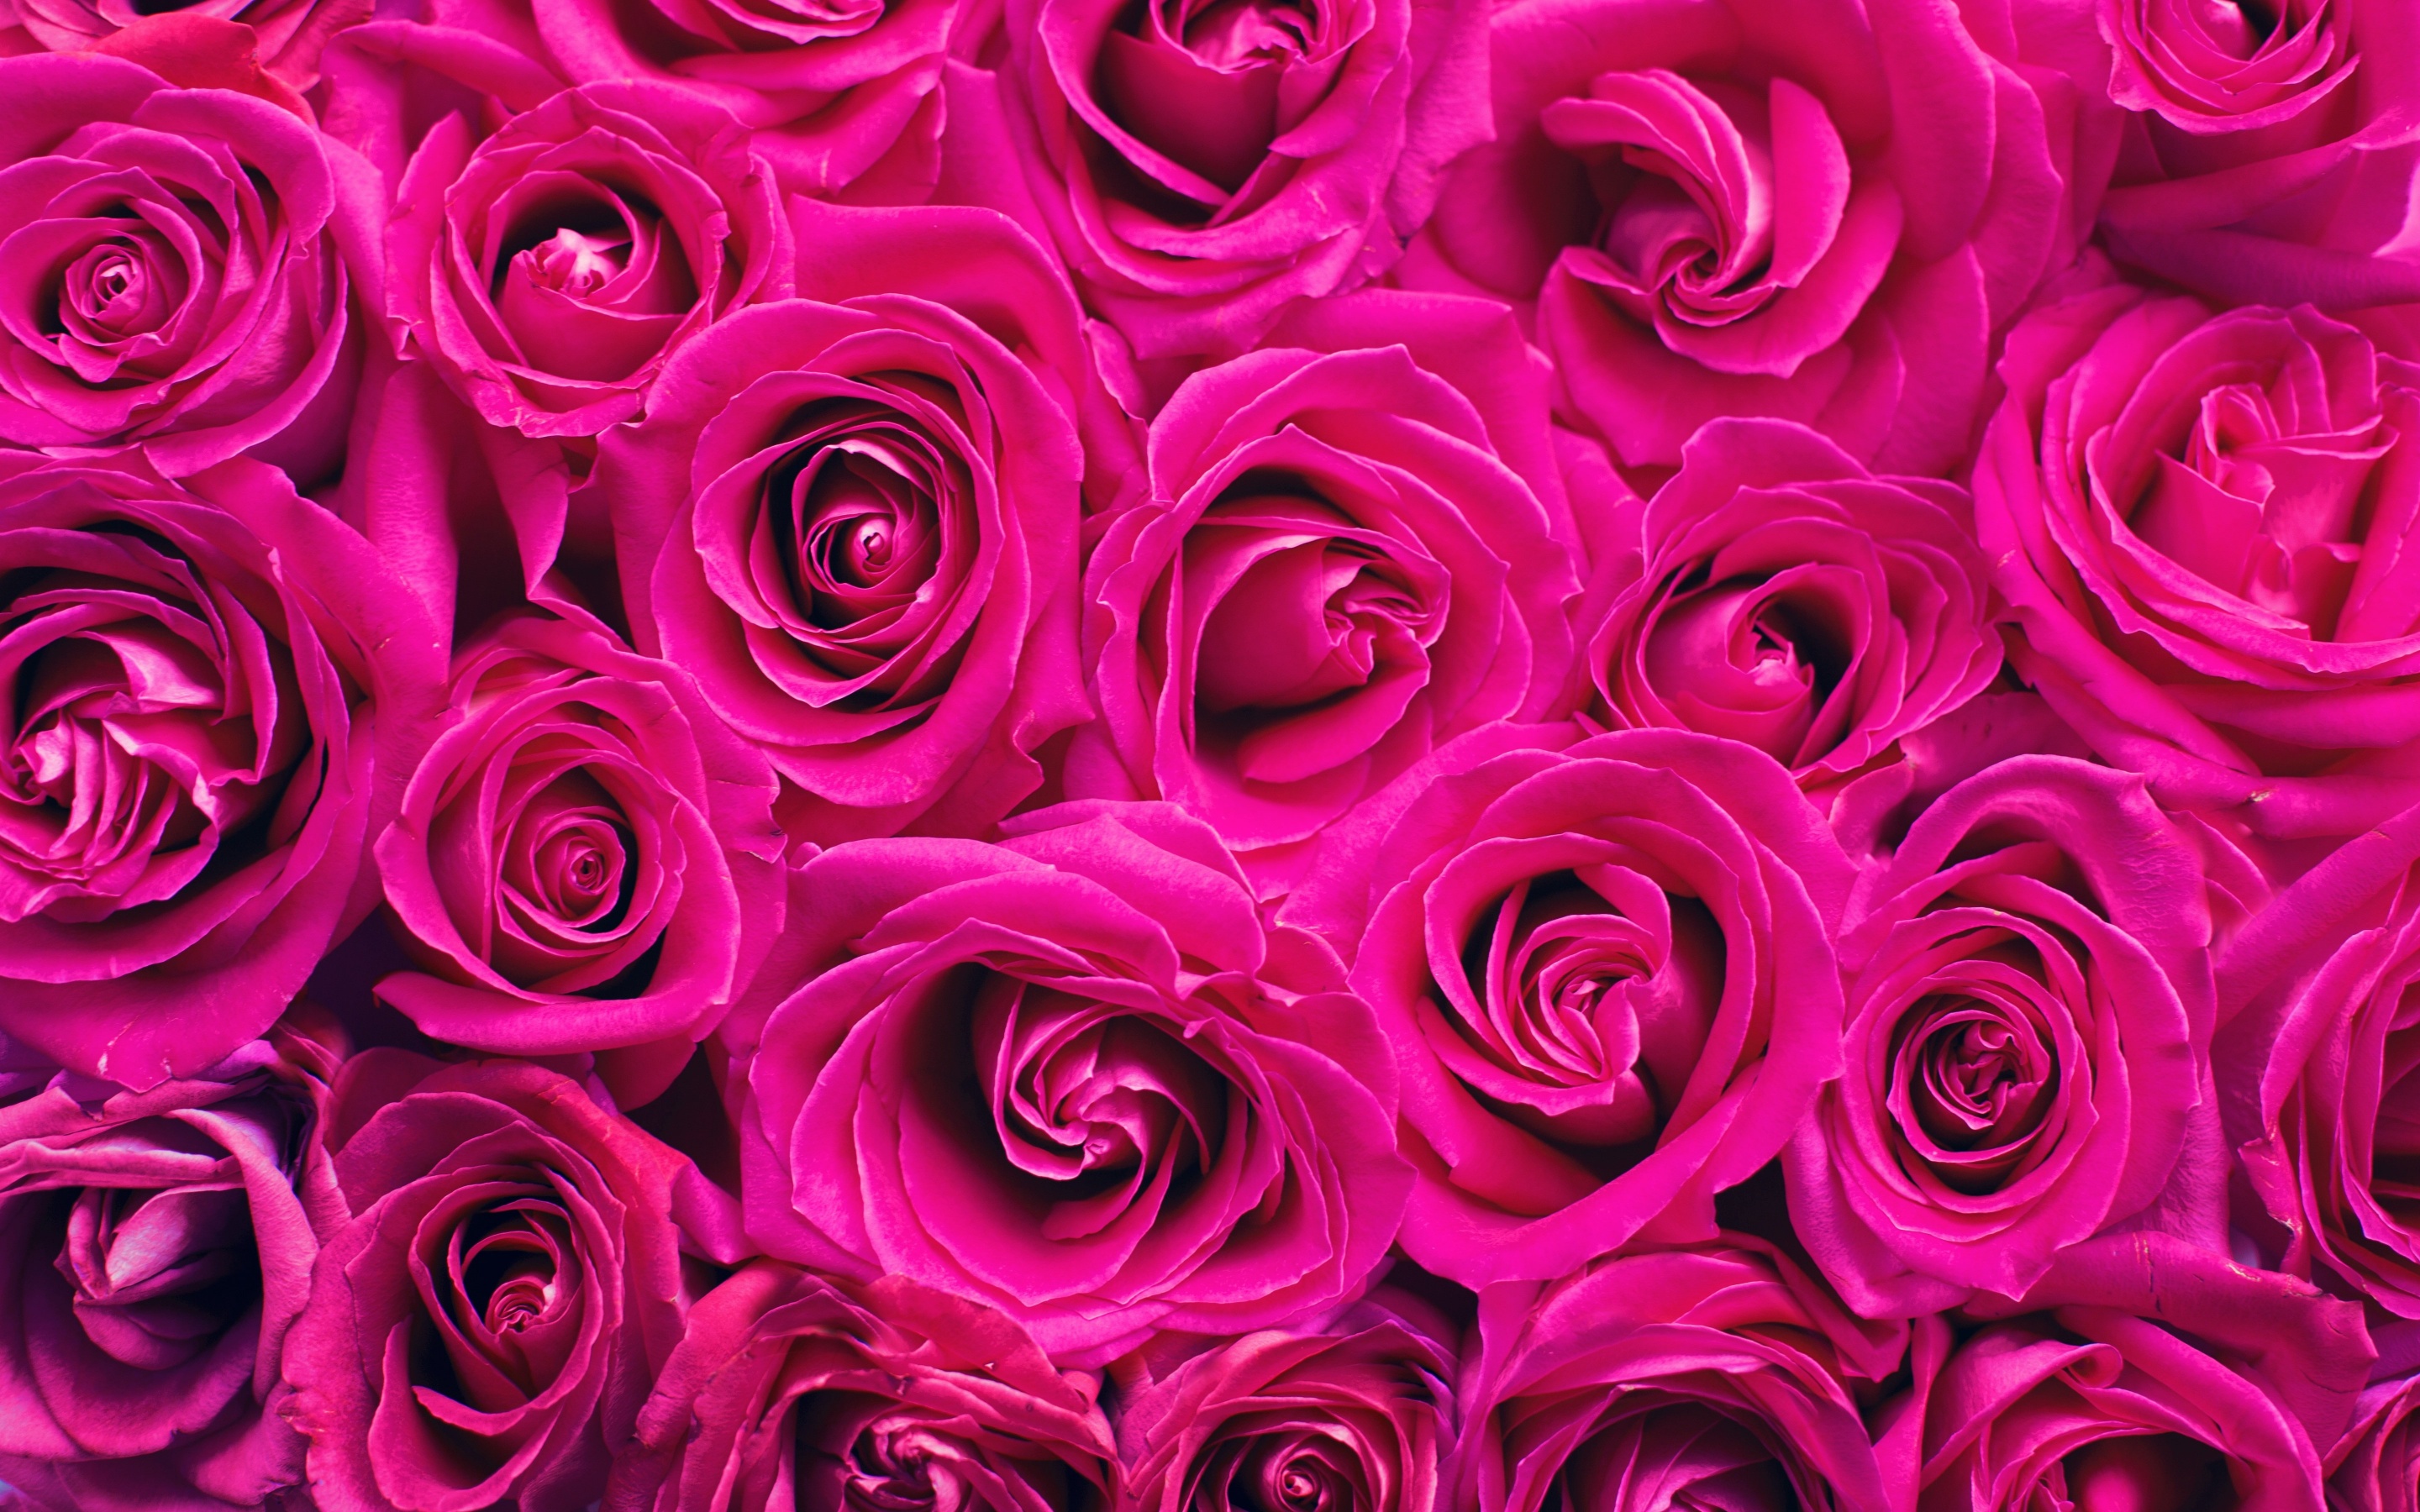 Hình nền hoa hồng màu hồng 4K là sự lựa chọn tuyệt vời cho những ai yêu thích sự hiển thị sắc nét nhất có thể. Với độ phân giải cao nhất, bạn sẽ được chiêm ngưỡng độ tinh khiết và tuyệt đẹp của từng cánh hoa hồng trên nền đen thật là tuyệt vời.